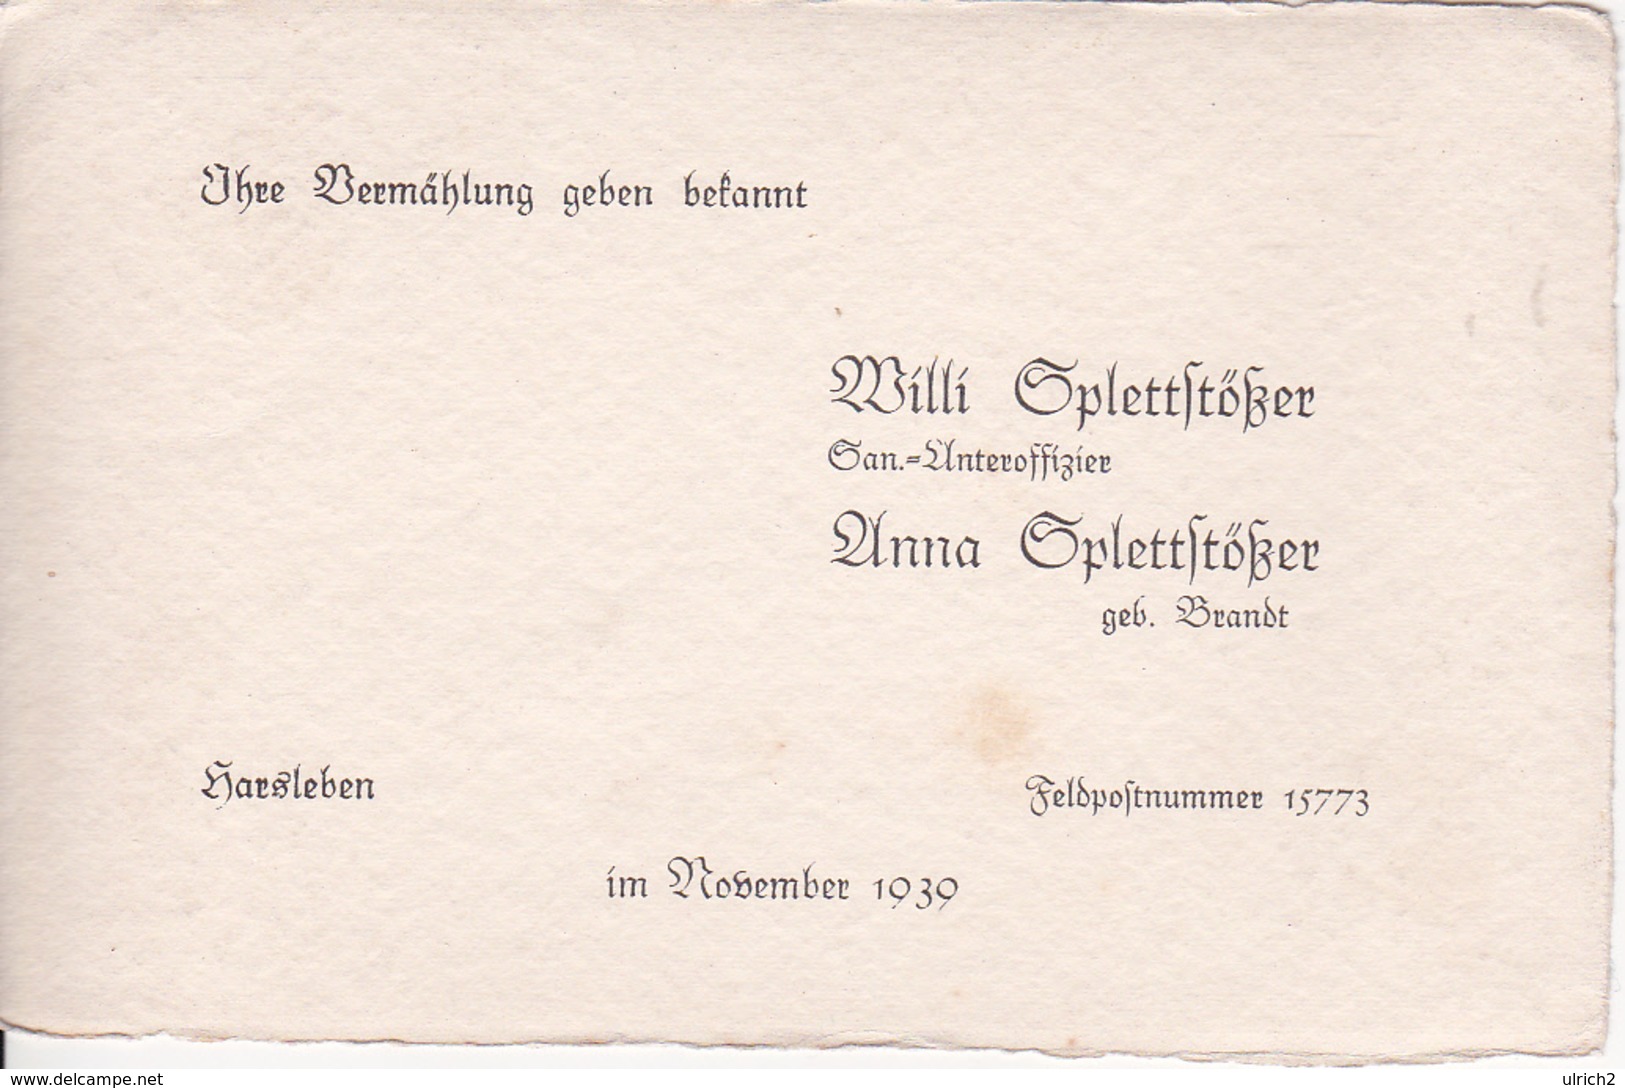 Vermählungs-Anzeige - Willi Und Anna Splettstößer - Harsleben / Feldpostnummer 15773 - November 1939 (26062) - Wedding